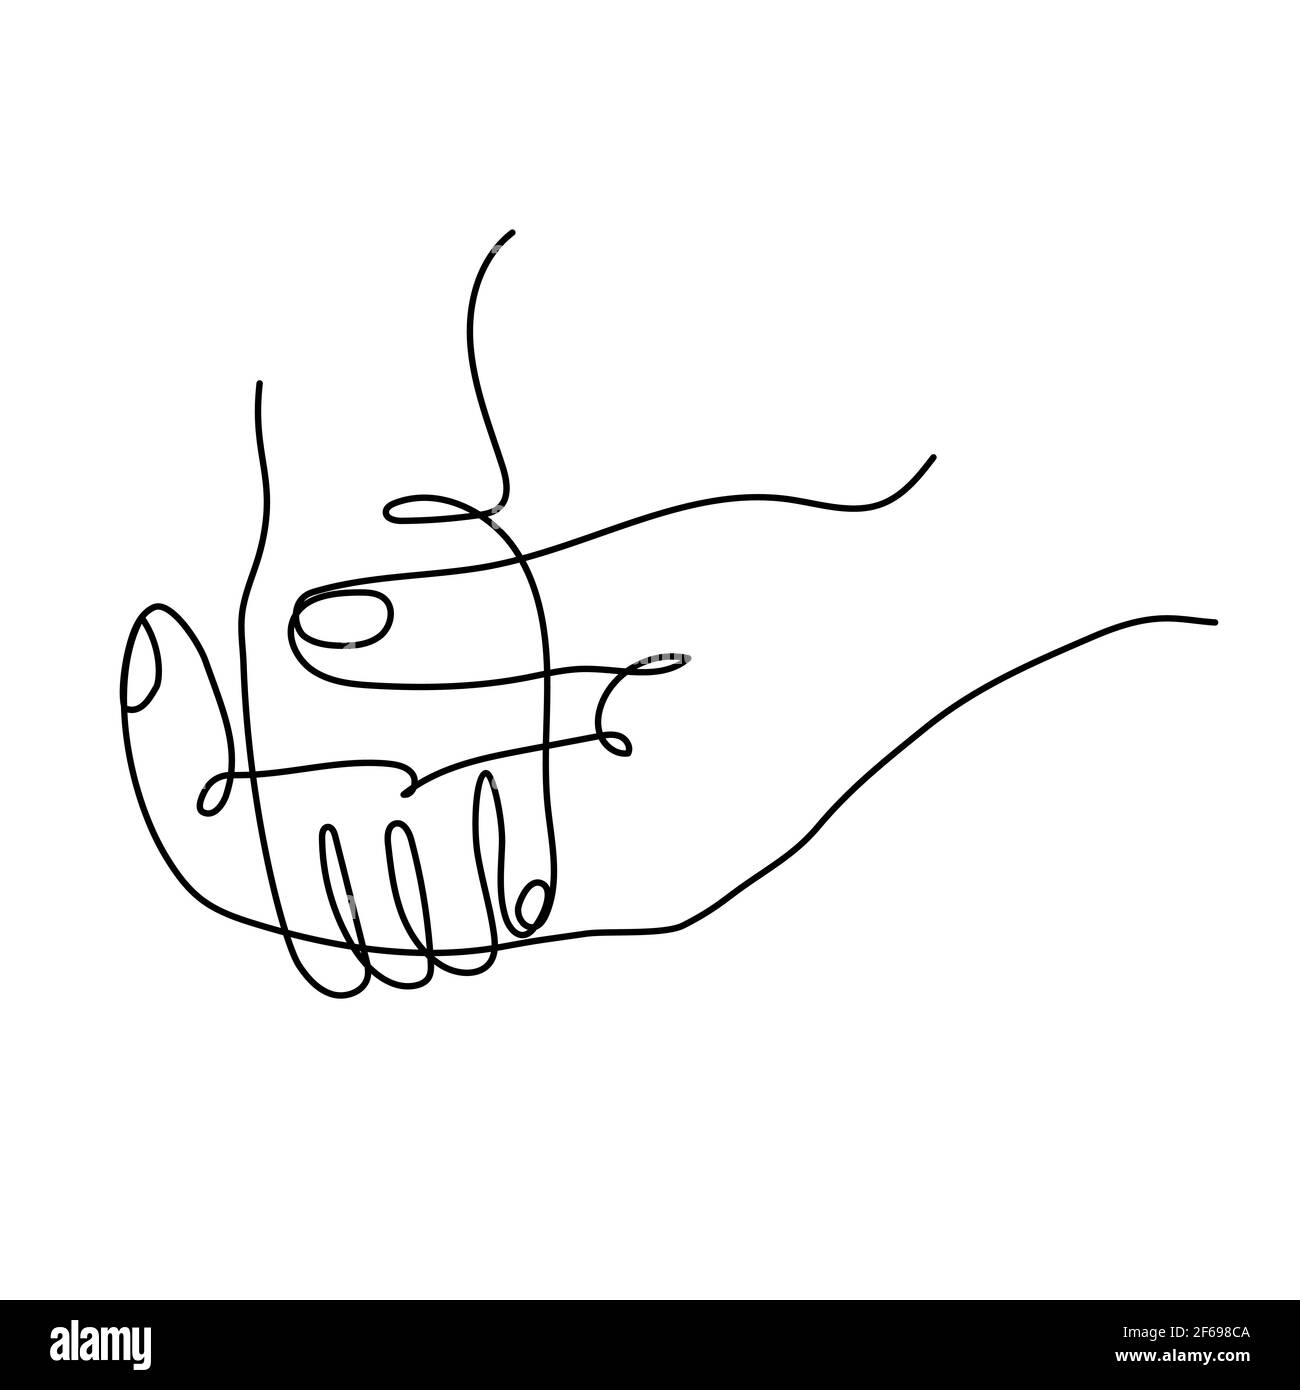 Icona di una mano dei genitori adulti che tiene una mano dei piccoli bambini. Semplice illustrazione vettoriale line art Illustrazione Vettoriale